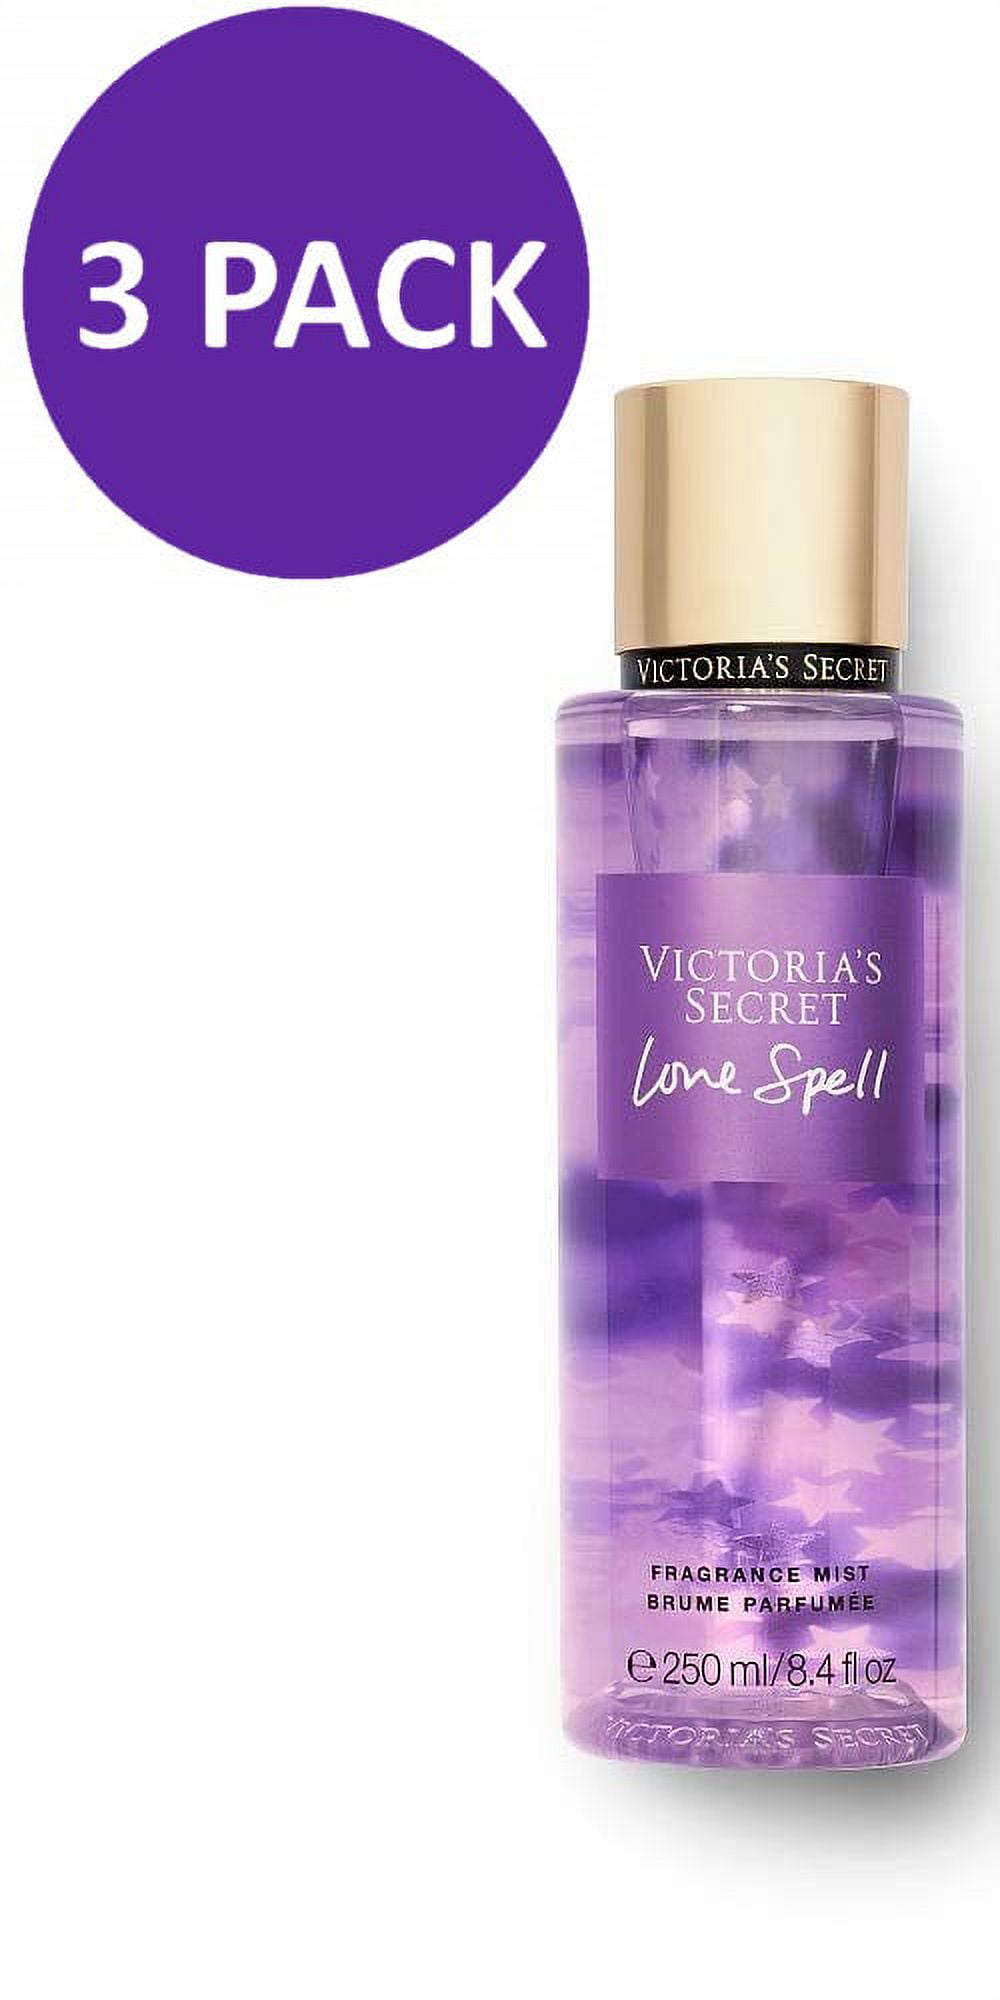 Love Spell by Victoria's Secret, 8.4 oz frag for Women